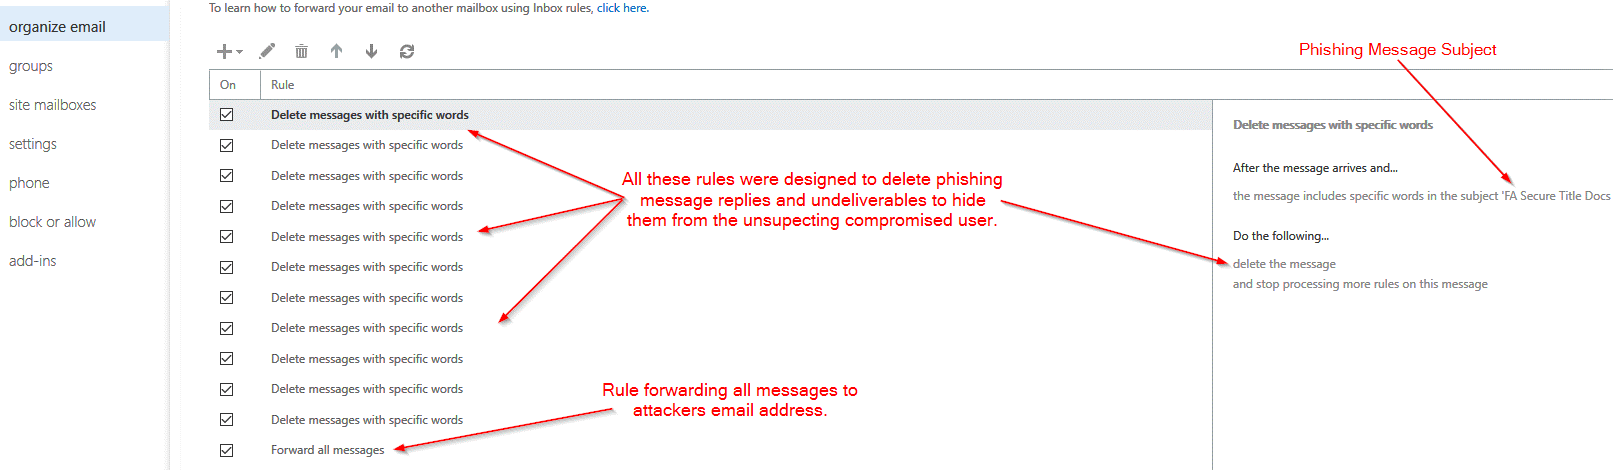 screenshot showing phishing rules